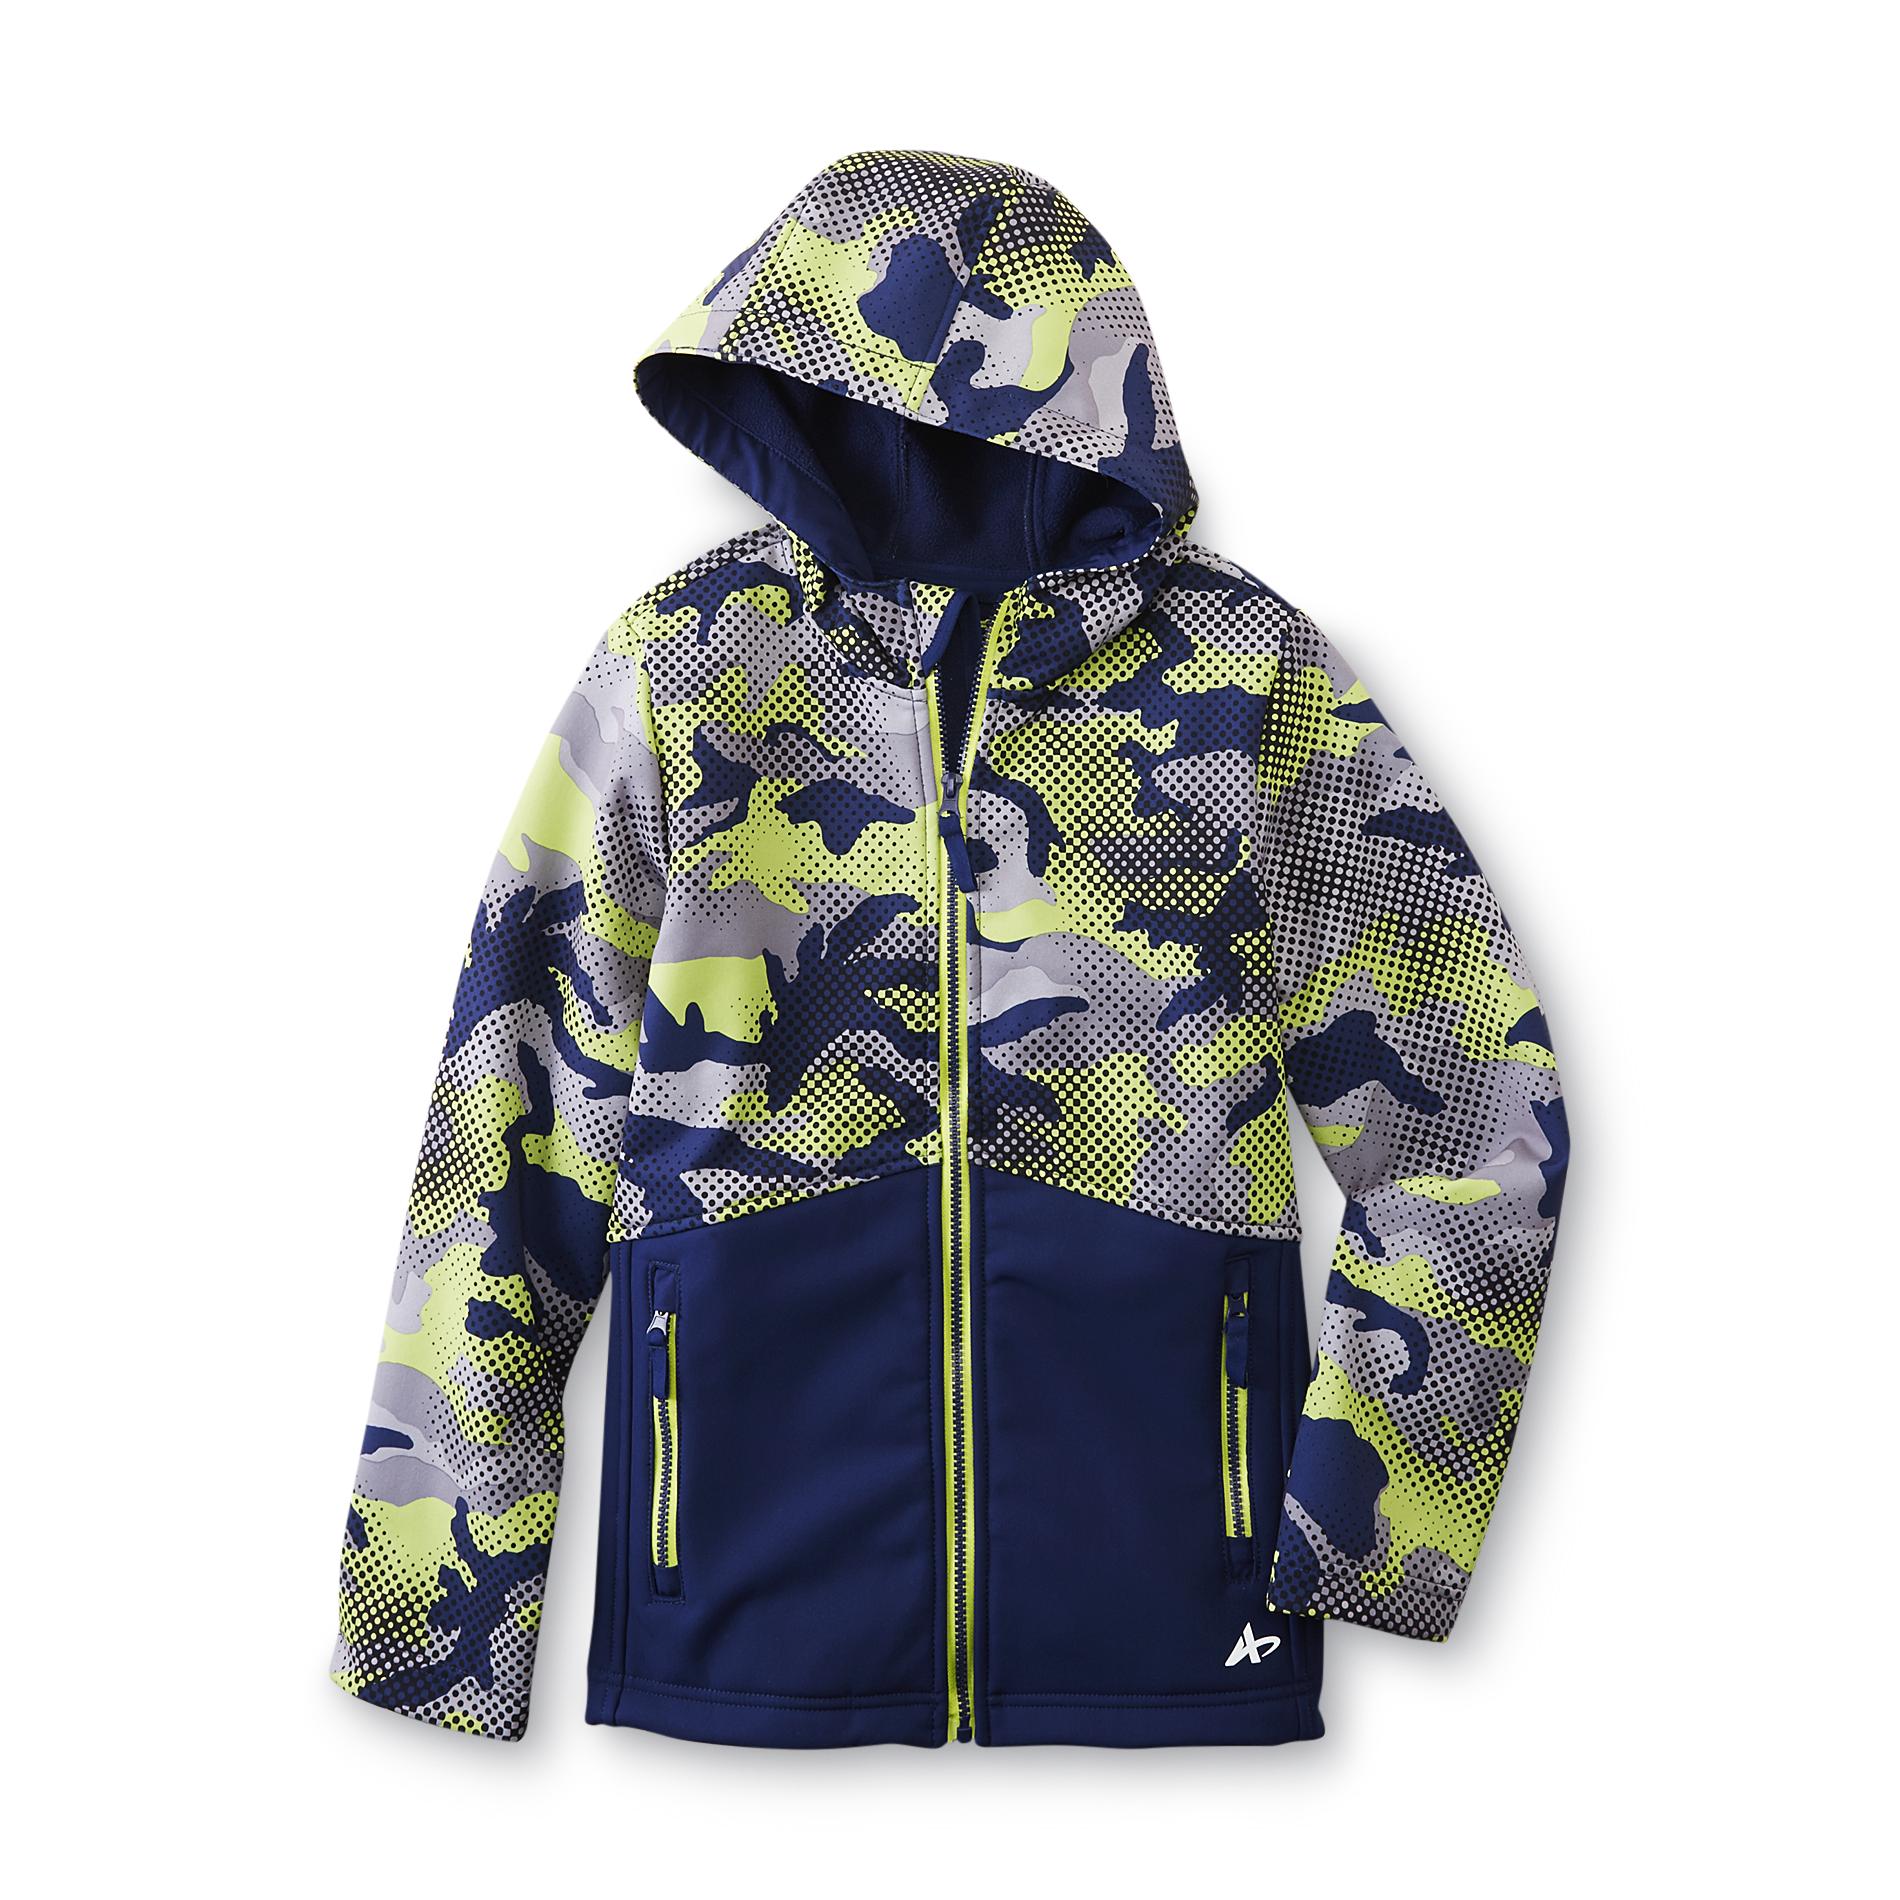 Athletech Boy's Hooded Fleece-Lined Windbreaker Jacket - Camouflage